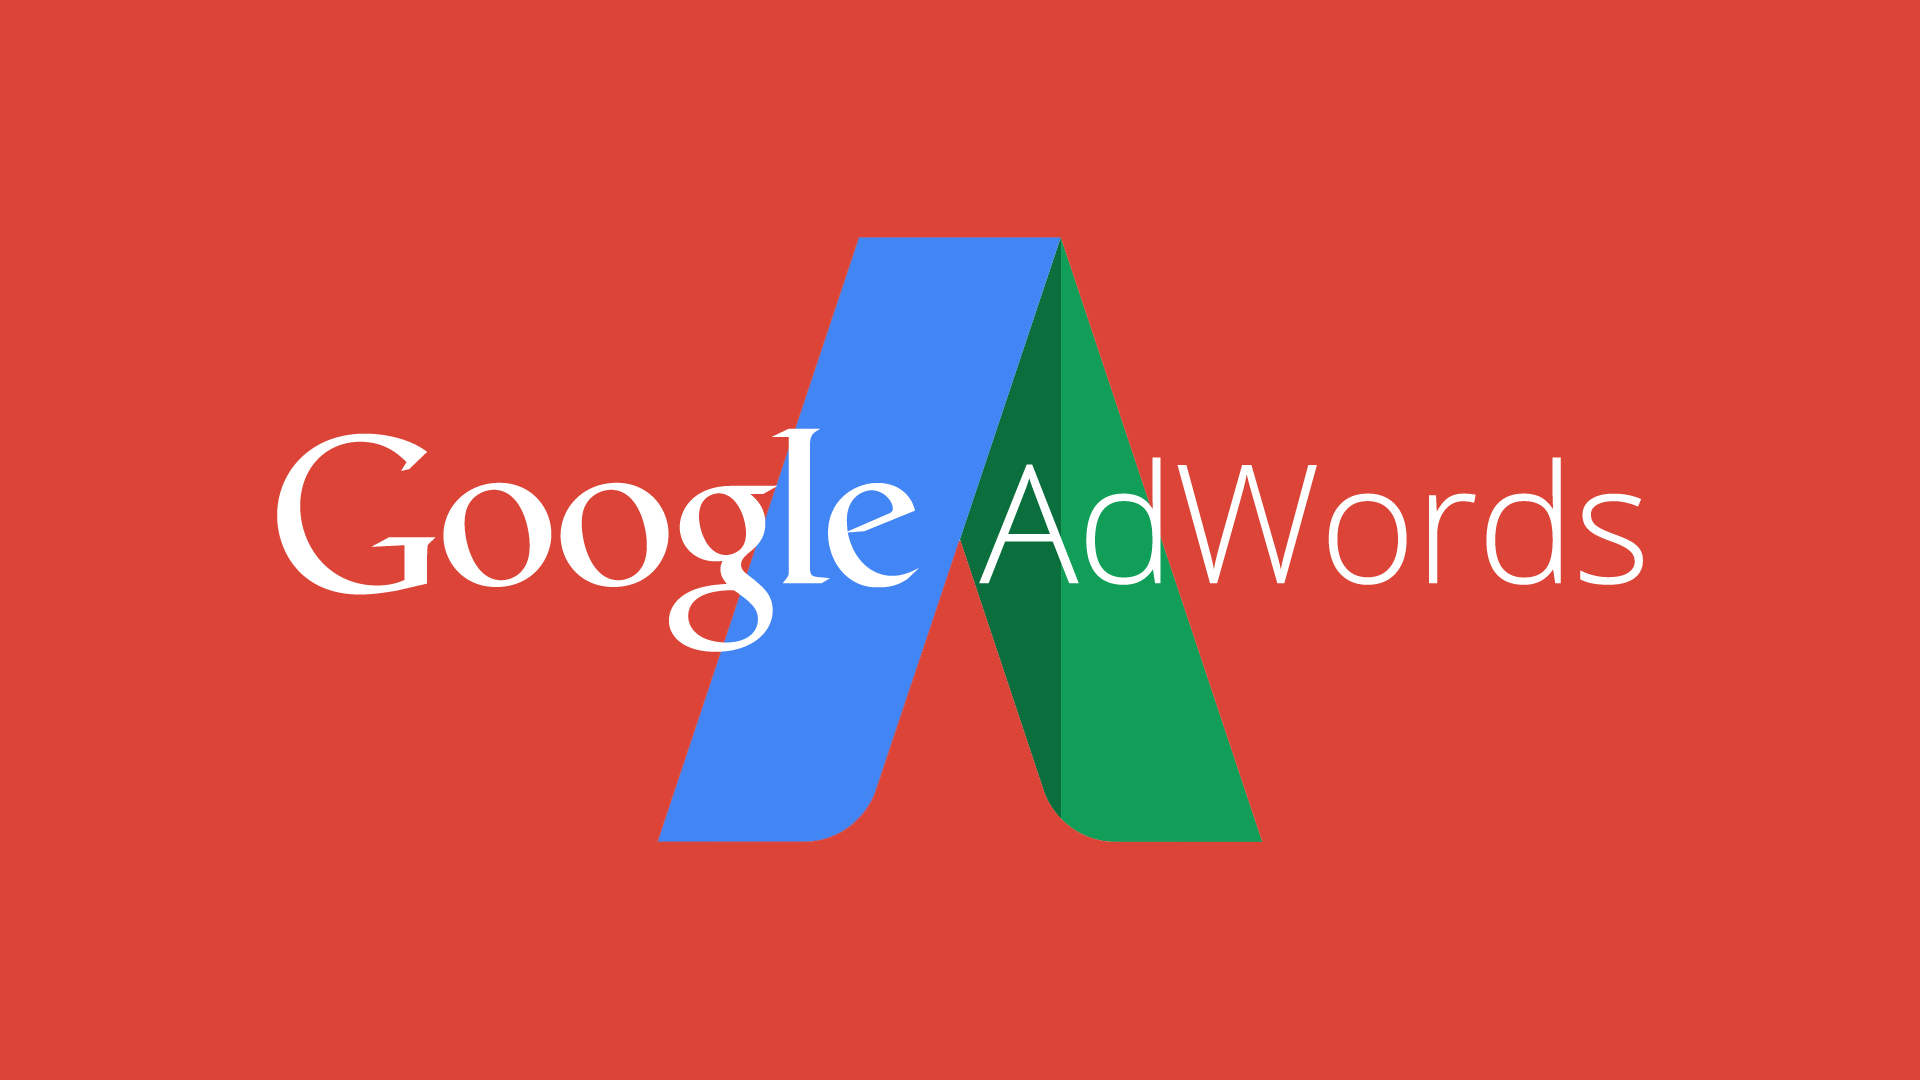 Google Adwords için Banner ve Video Reklam Tasarımı ile ilgili incelikleri öğrenin